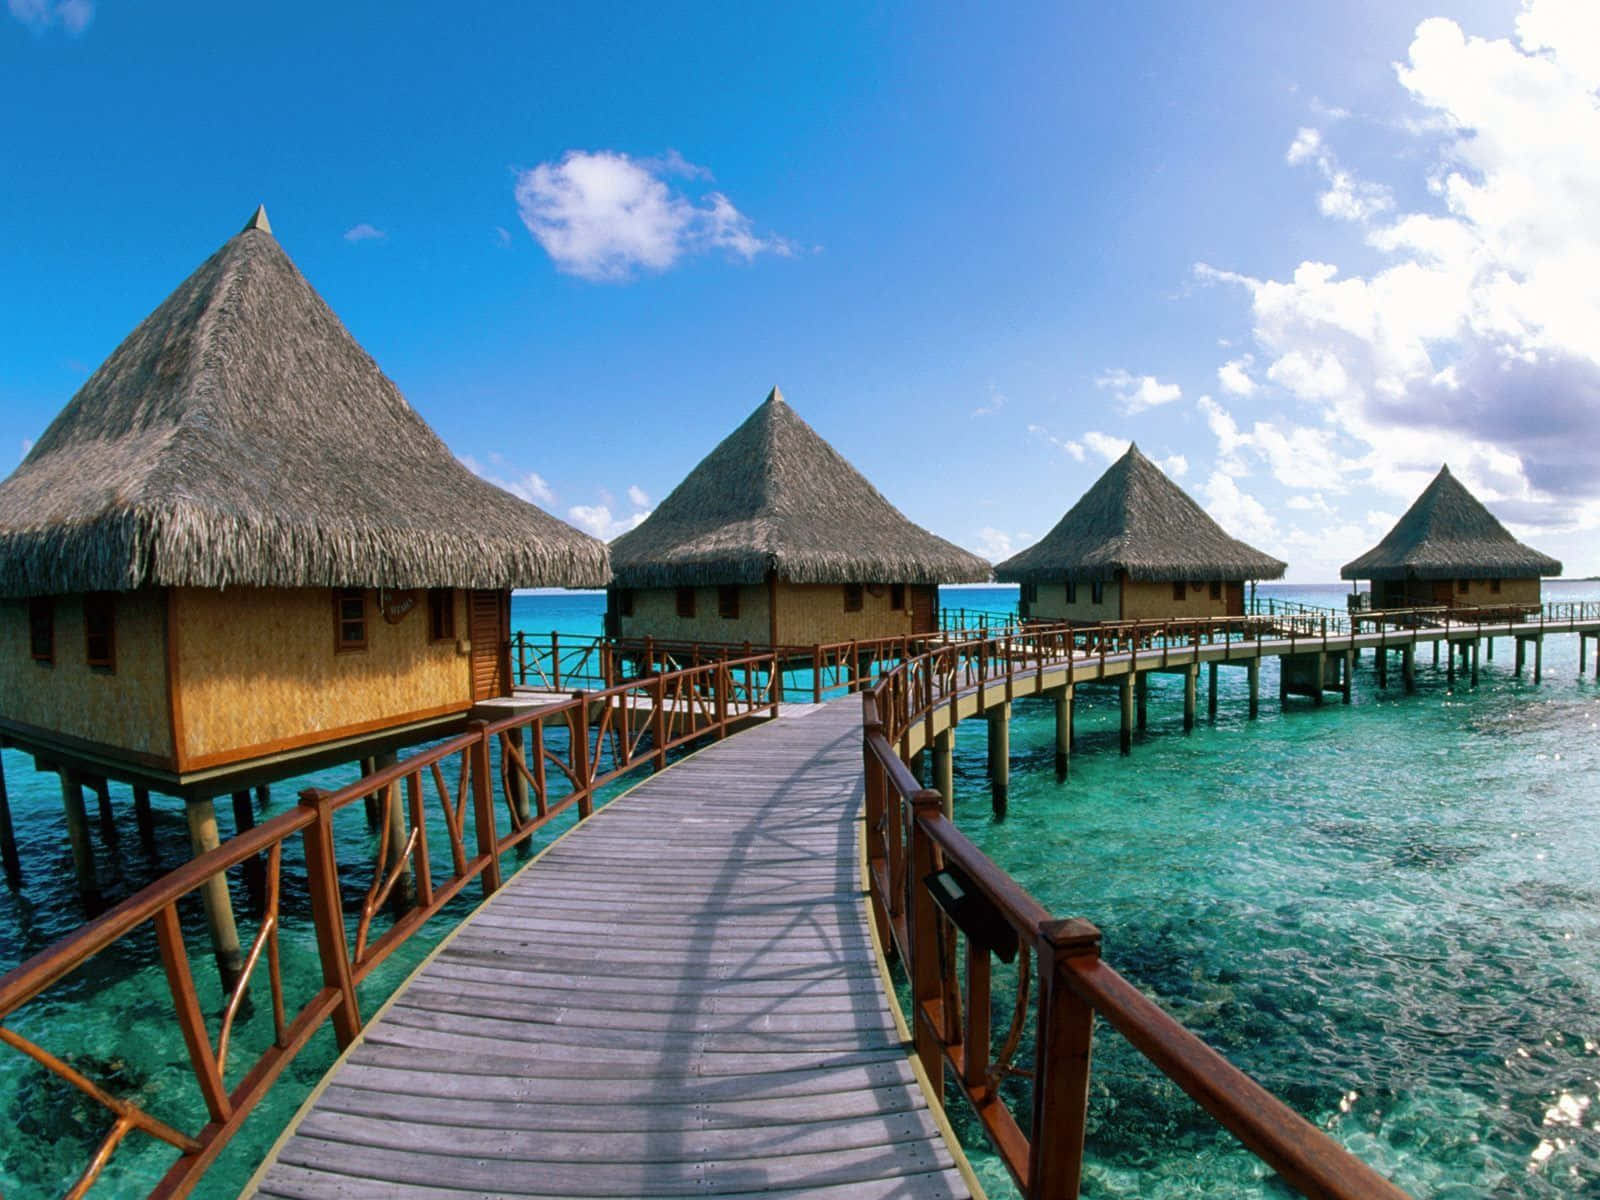 Breathtaking lagoon and mountain views from the island of Bora Bora, French Polynesia